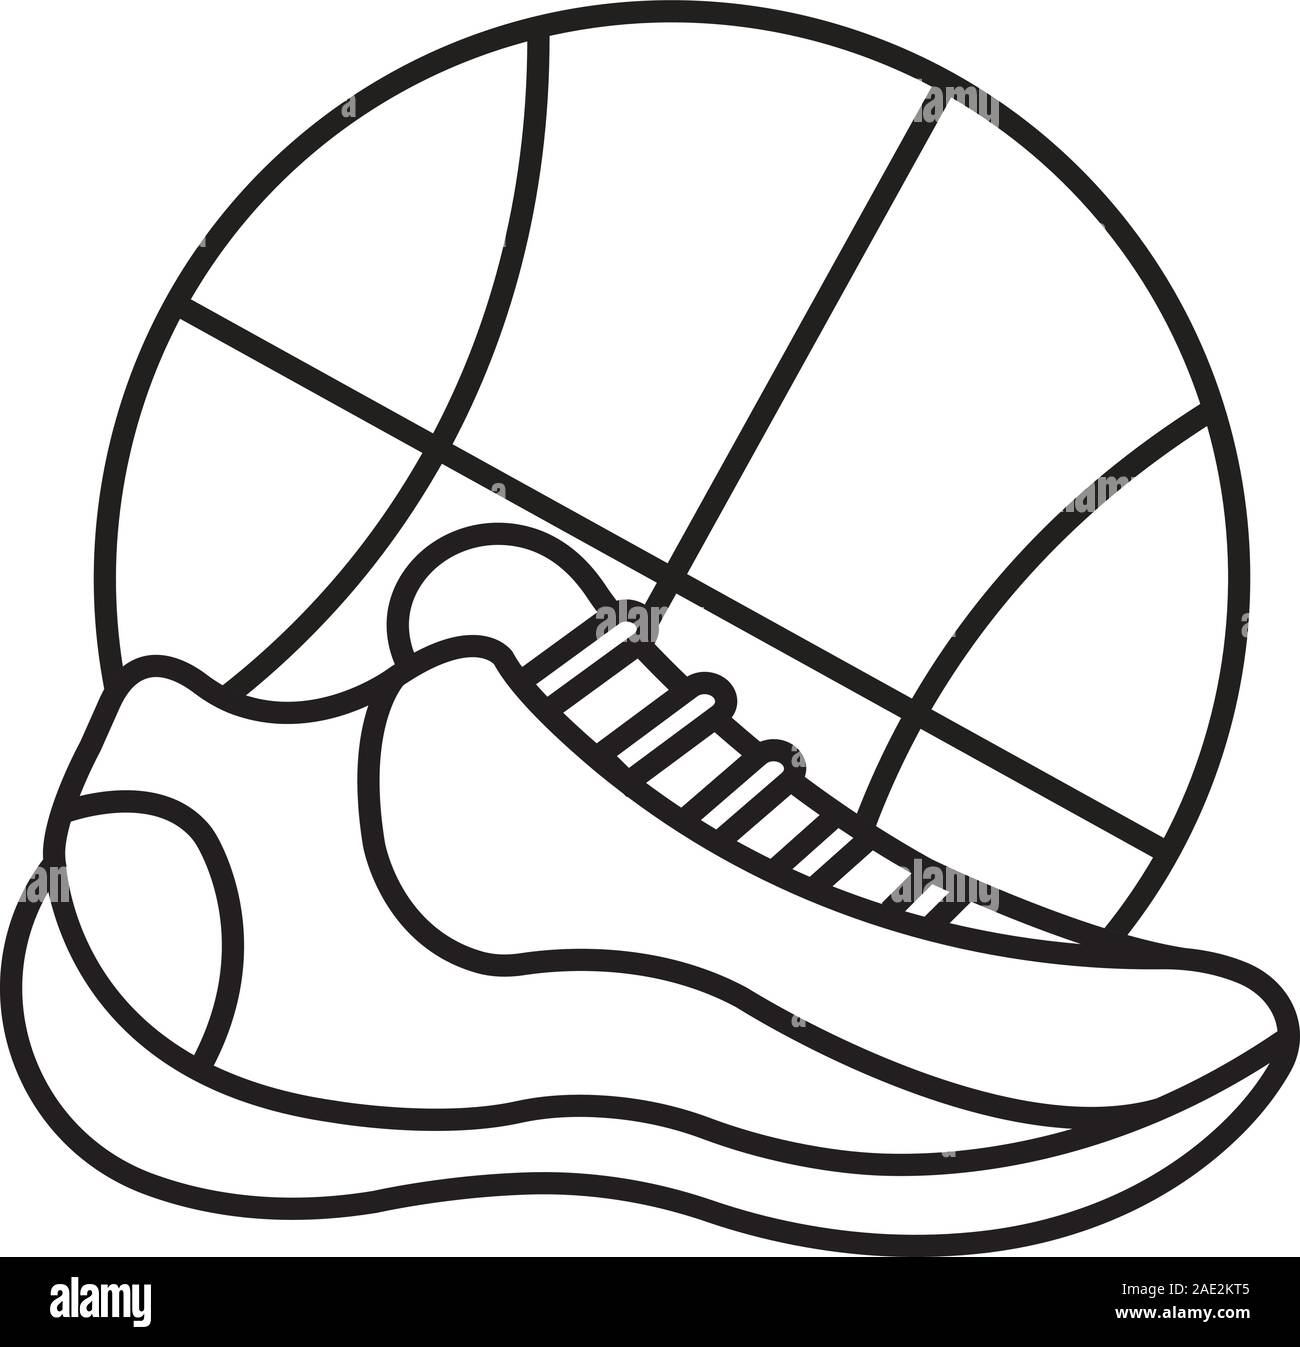 Chaussure de basket ball et l'icône de linéaire. Fine ligne illustration.  Symbole de contour. Dessin vectoriel aperçu isolés Image Vectorielle Stock  - Alamy